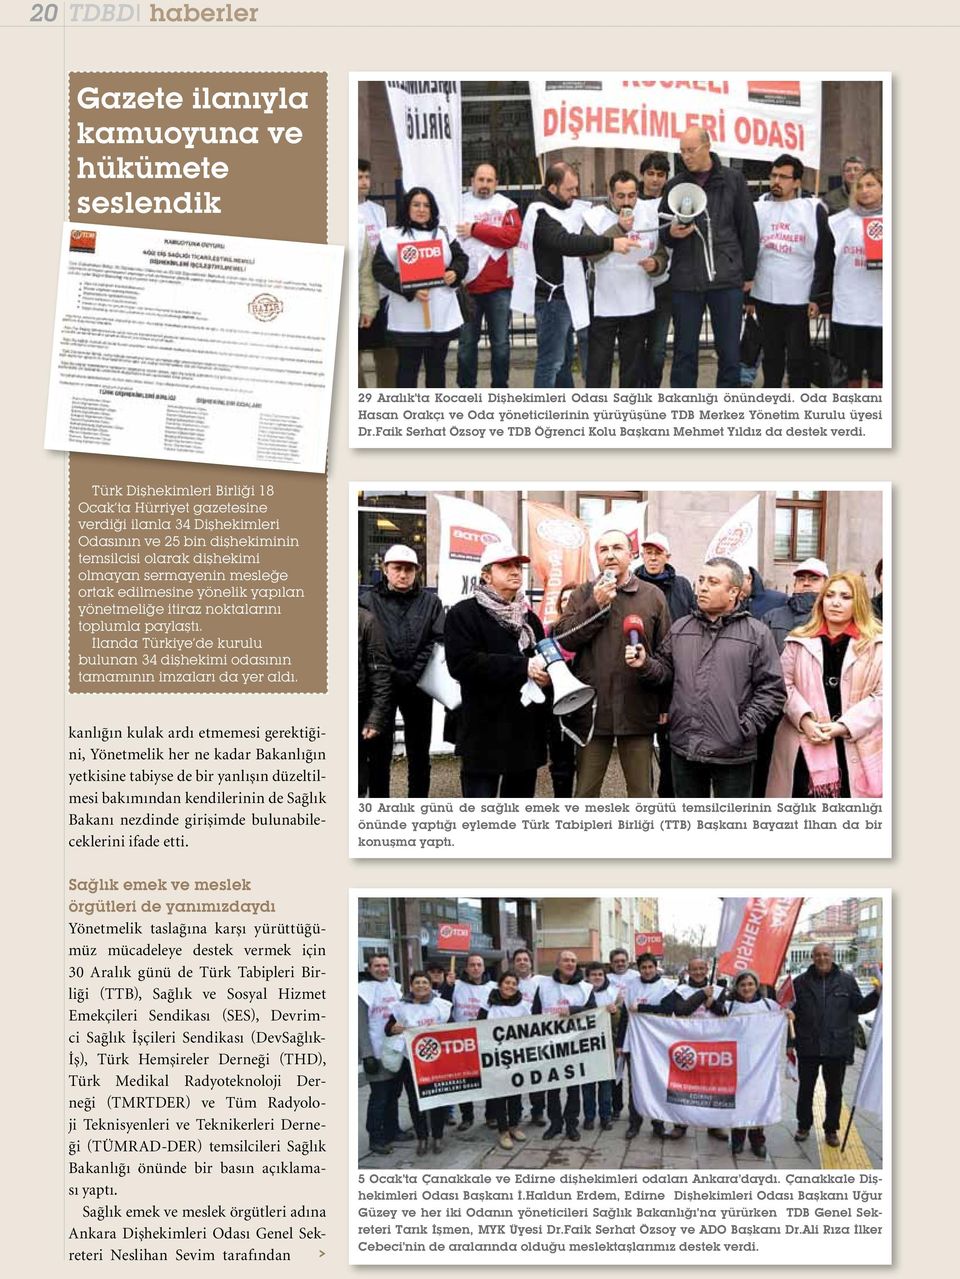 Türk Dişhekimleri Birliği 18 Ocak ta Hürriyet gazetesine verdiği ilanla 34 Dişhekimleri Odasının ve 25 bin dişhekiminin temsilcisi olarak dişhekimi olmayan sermayenin mesleğe ortak edilmesine yönelik